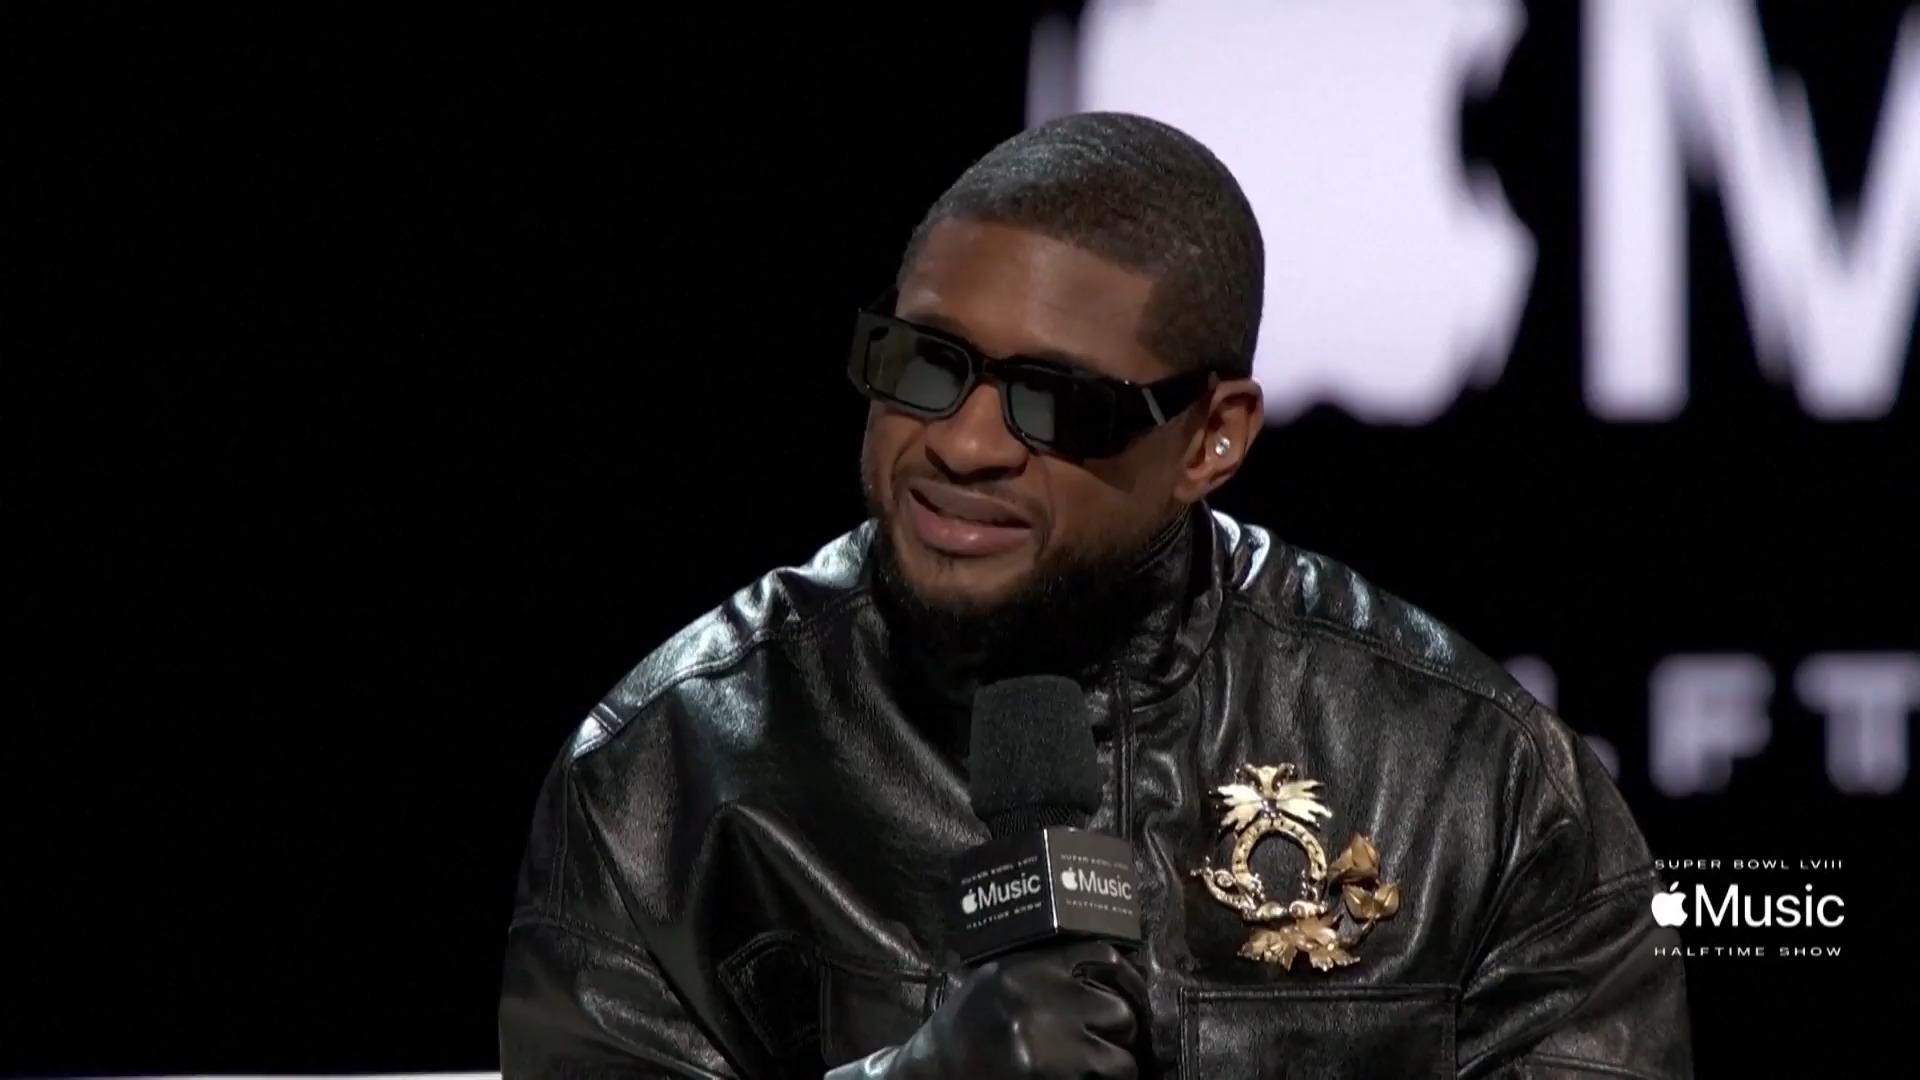 Usher verrät Idee hinter Auftritt bei Halftime-Show RnB Ikone bei Super Bowl